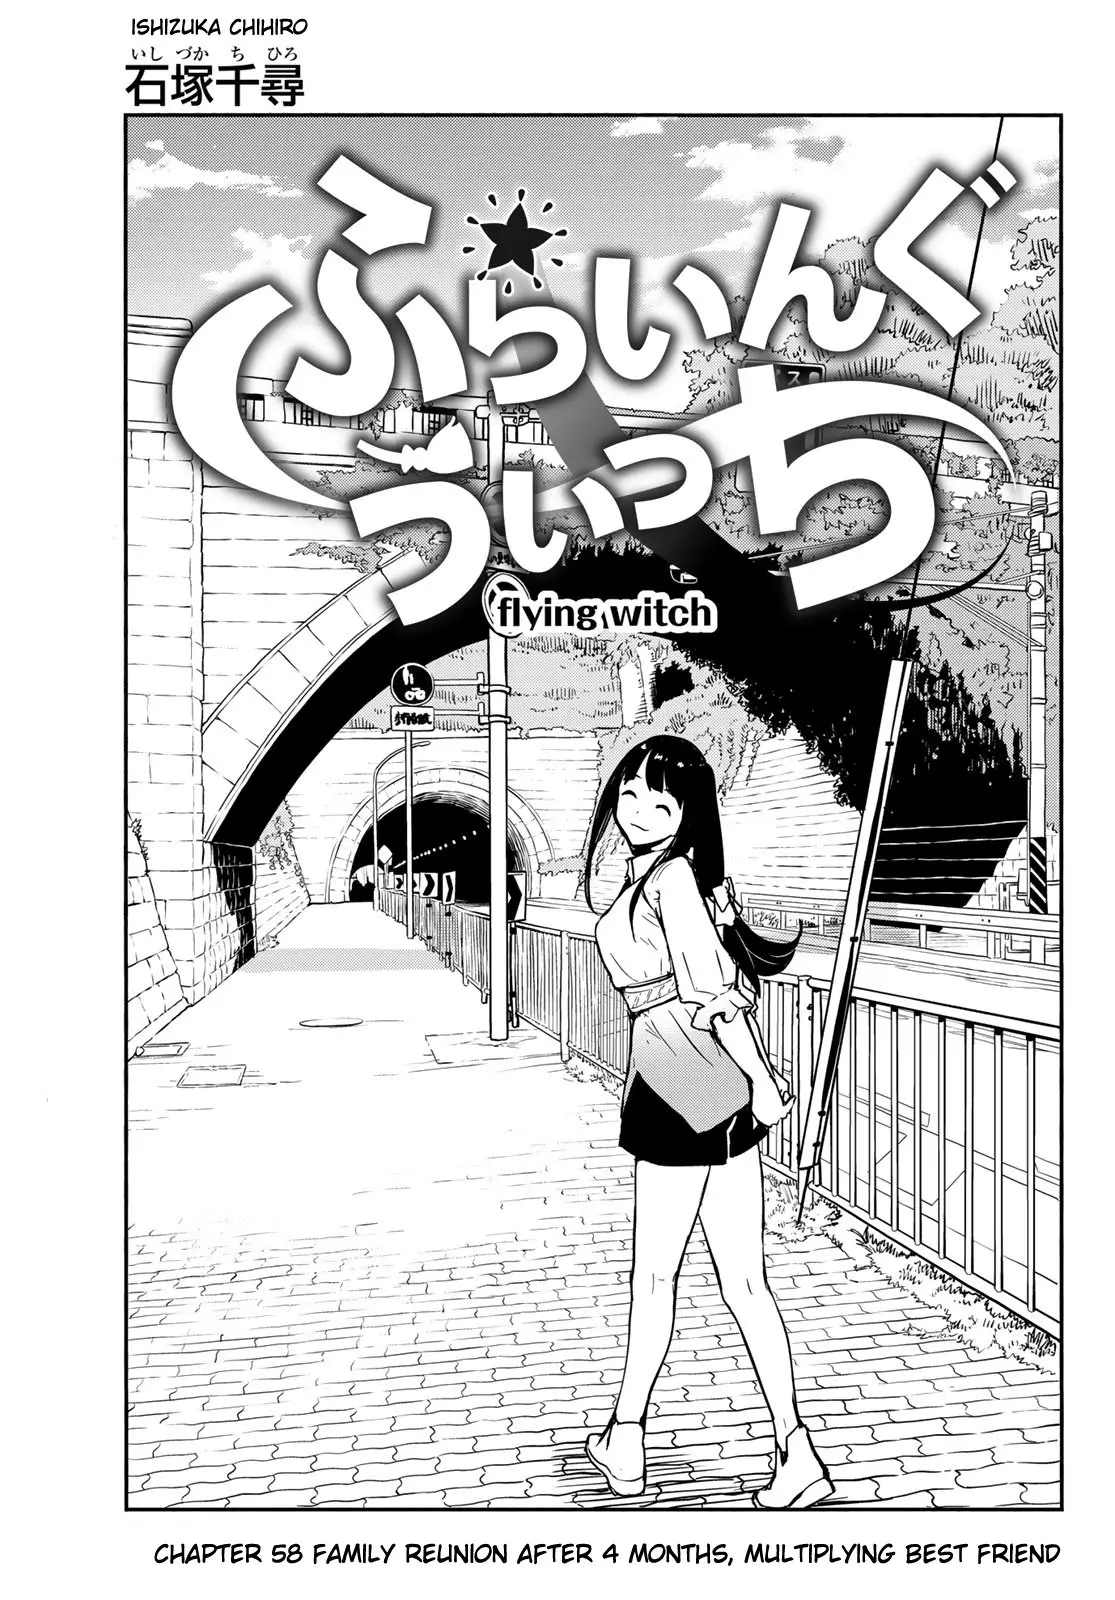 Flying Witch (ISHIZUKA Chihiro) - 58 page 3